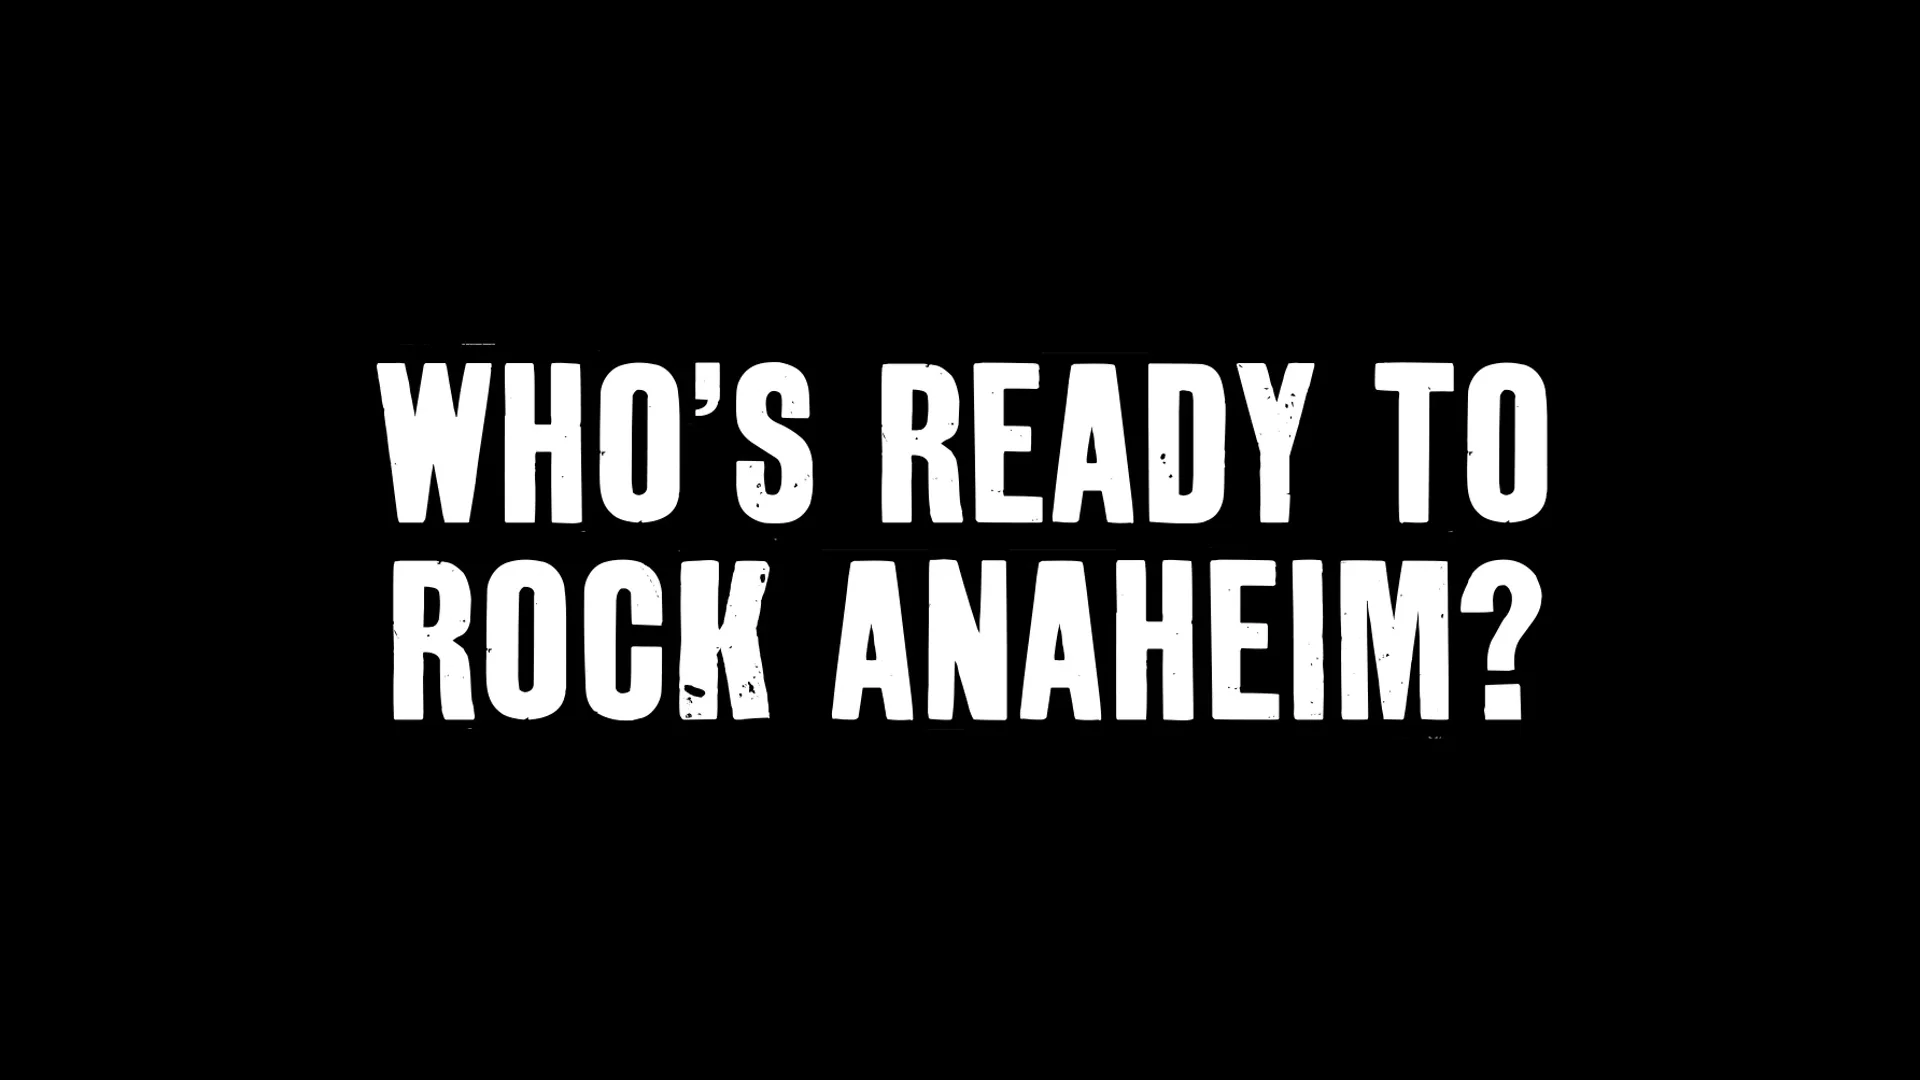 The Rock, Anaheim